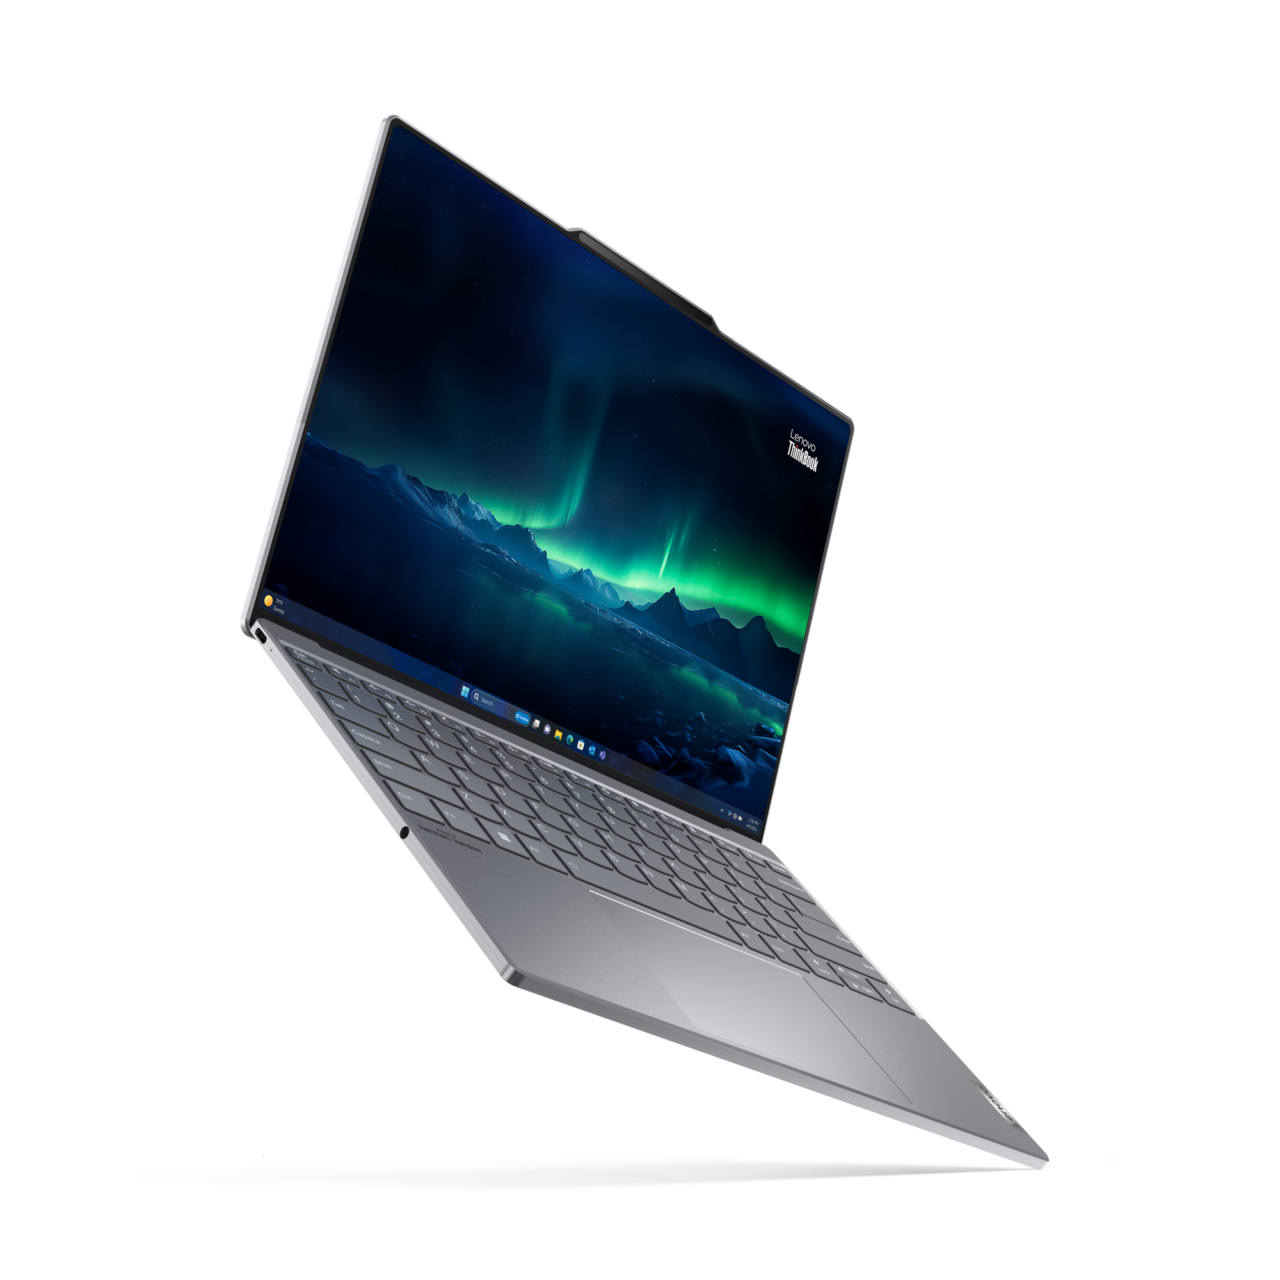 Laptop Lenovo ThinkBook na białym tle z włączonym ekranem przedstawiającym górski krajobraz i zorzę polarną, z klawiaturą o szarym wykończeniu.